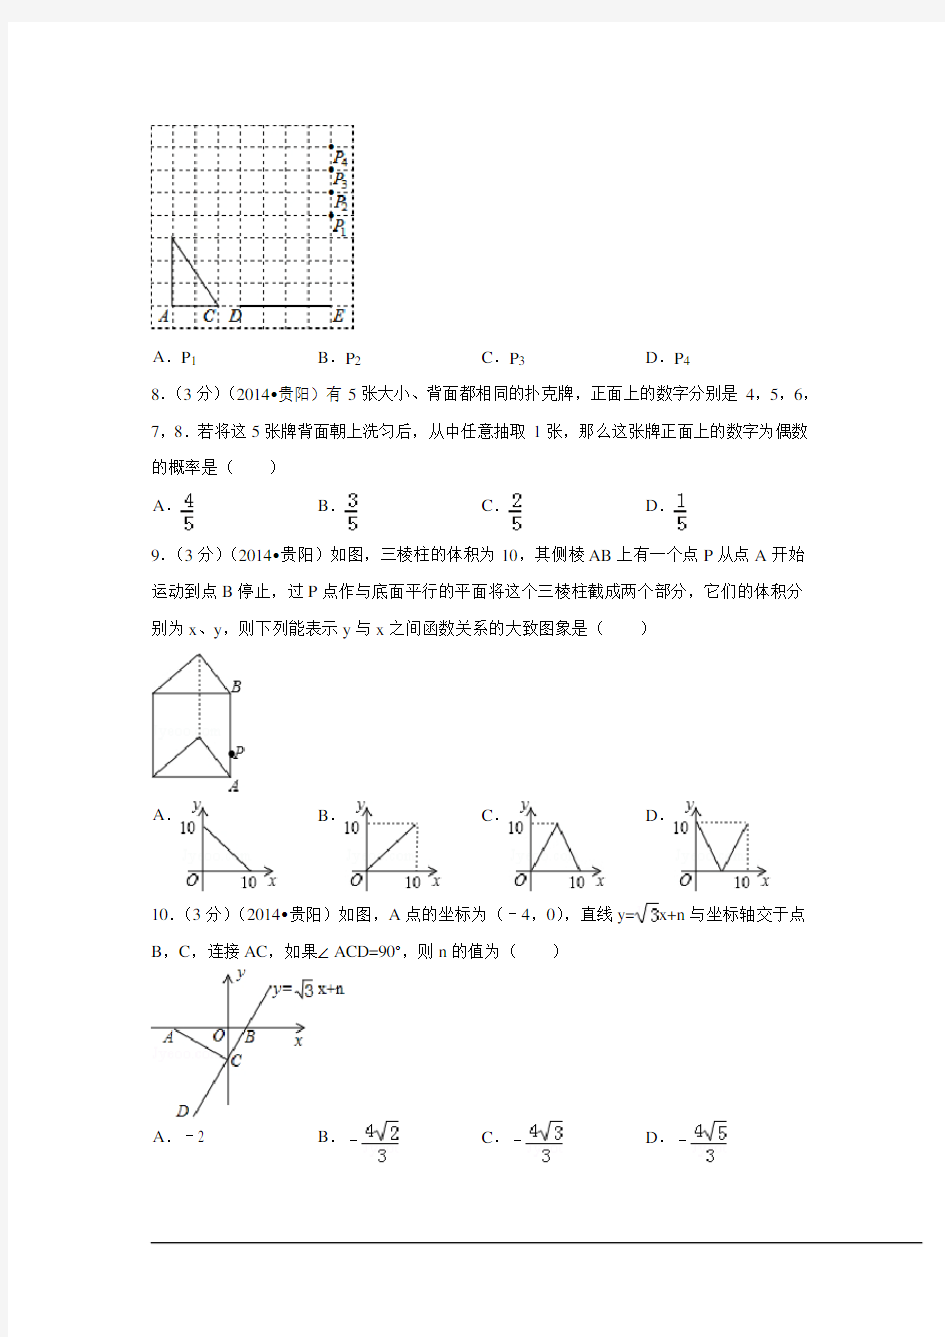 2014年贵州省贵阳市中考数学试卷附详细答案(原版+解析版)